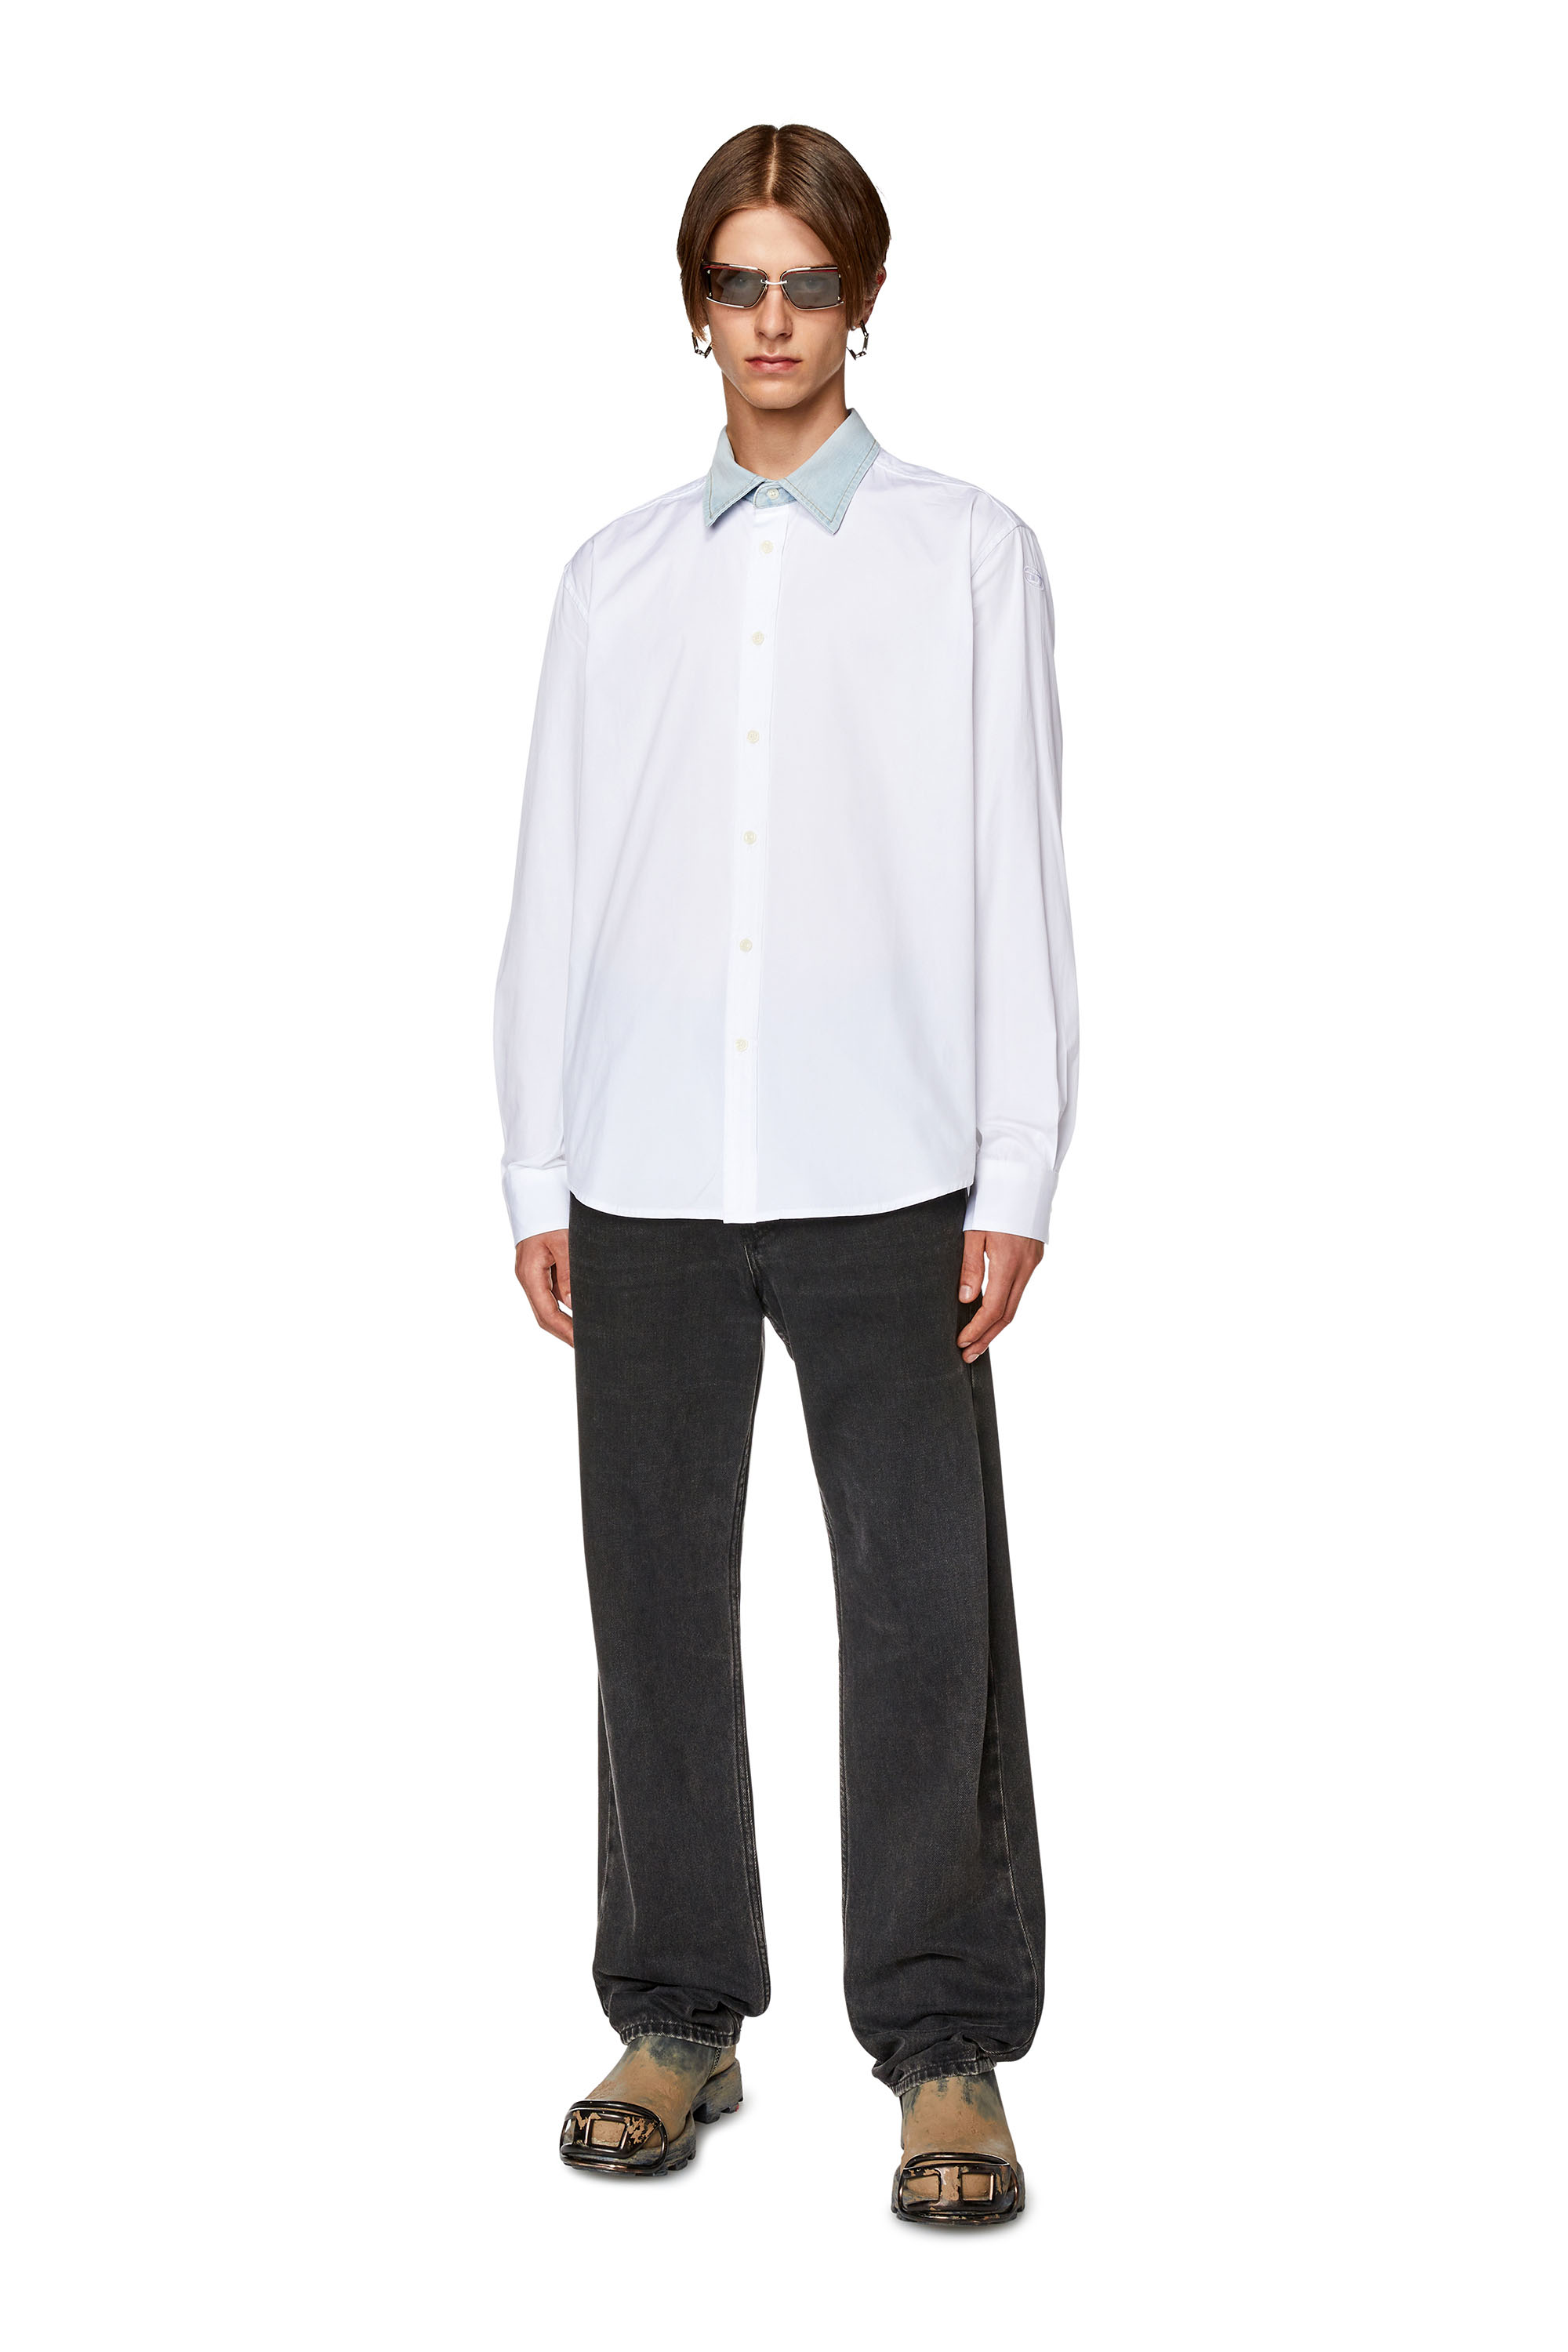 Diesel - S-HOLLS, Man Cotton shirt with denim collar in White - Image 2